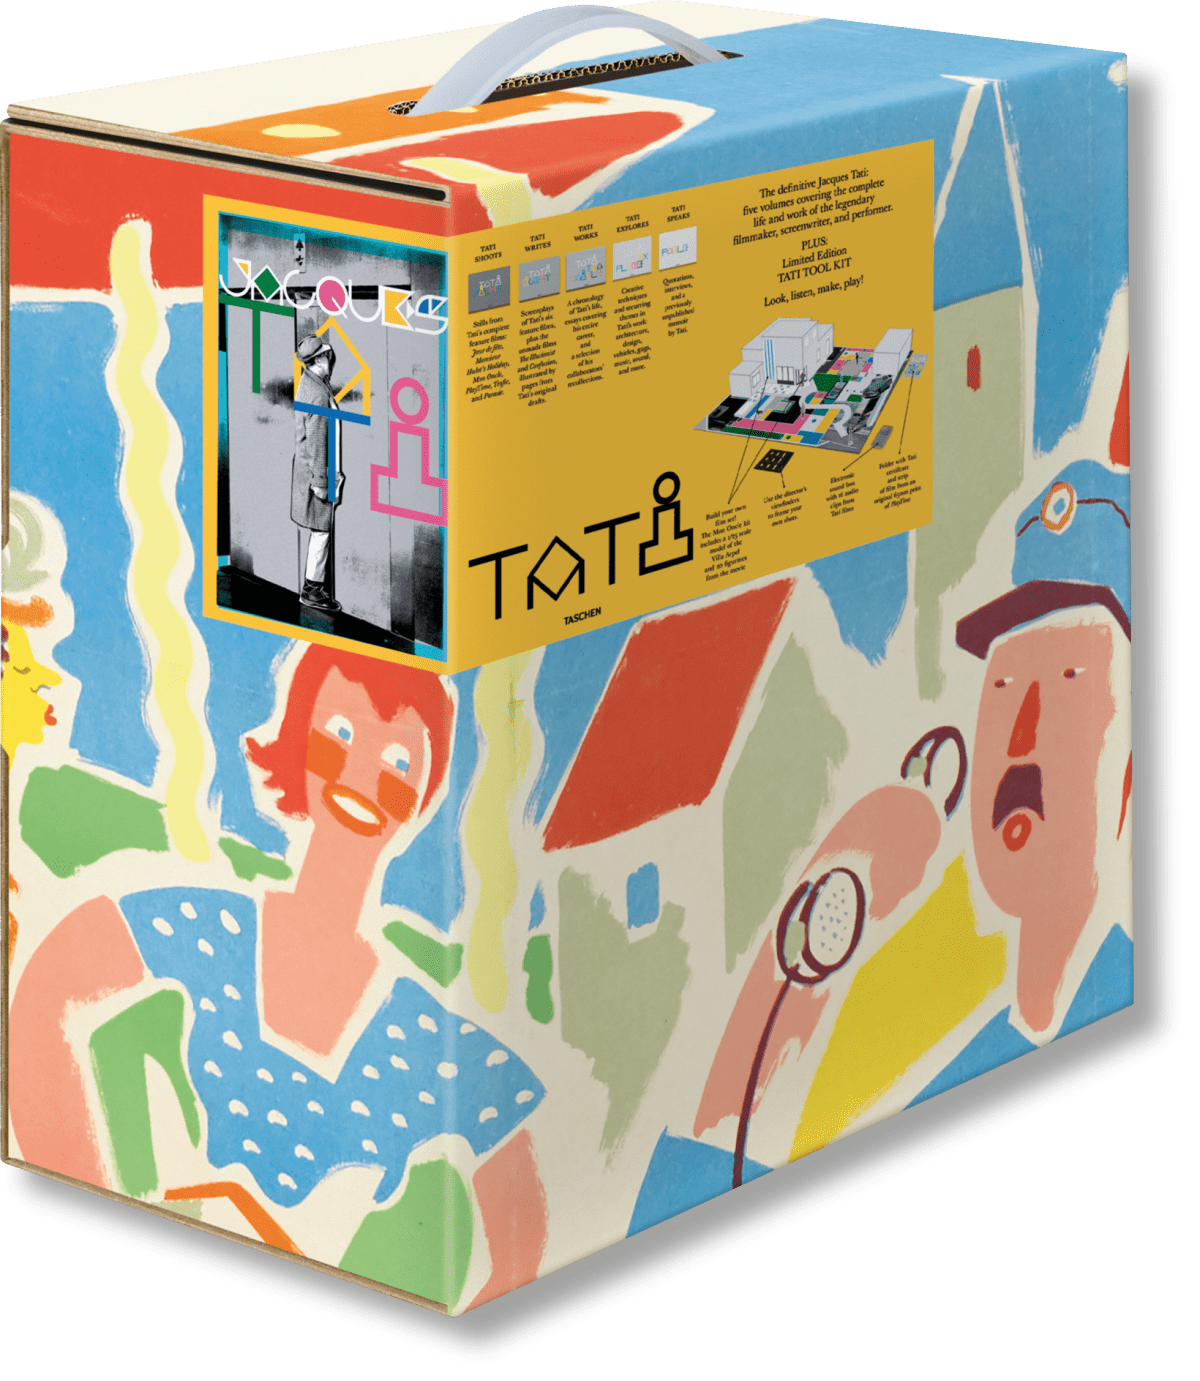 The Definitive Jacques Tati